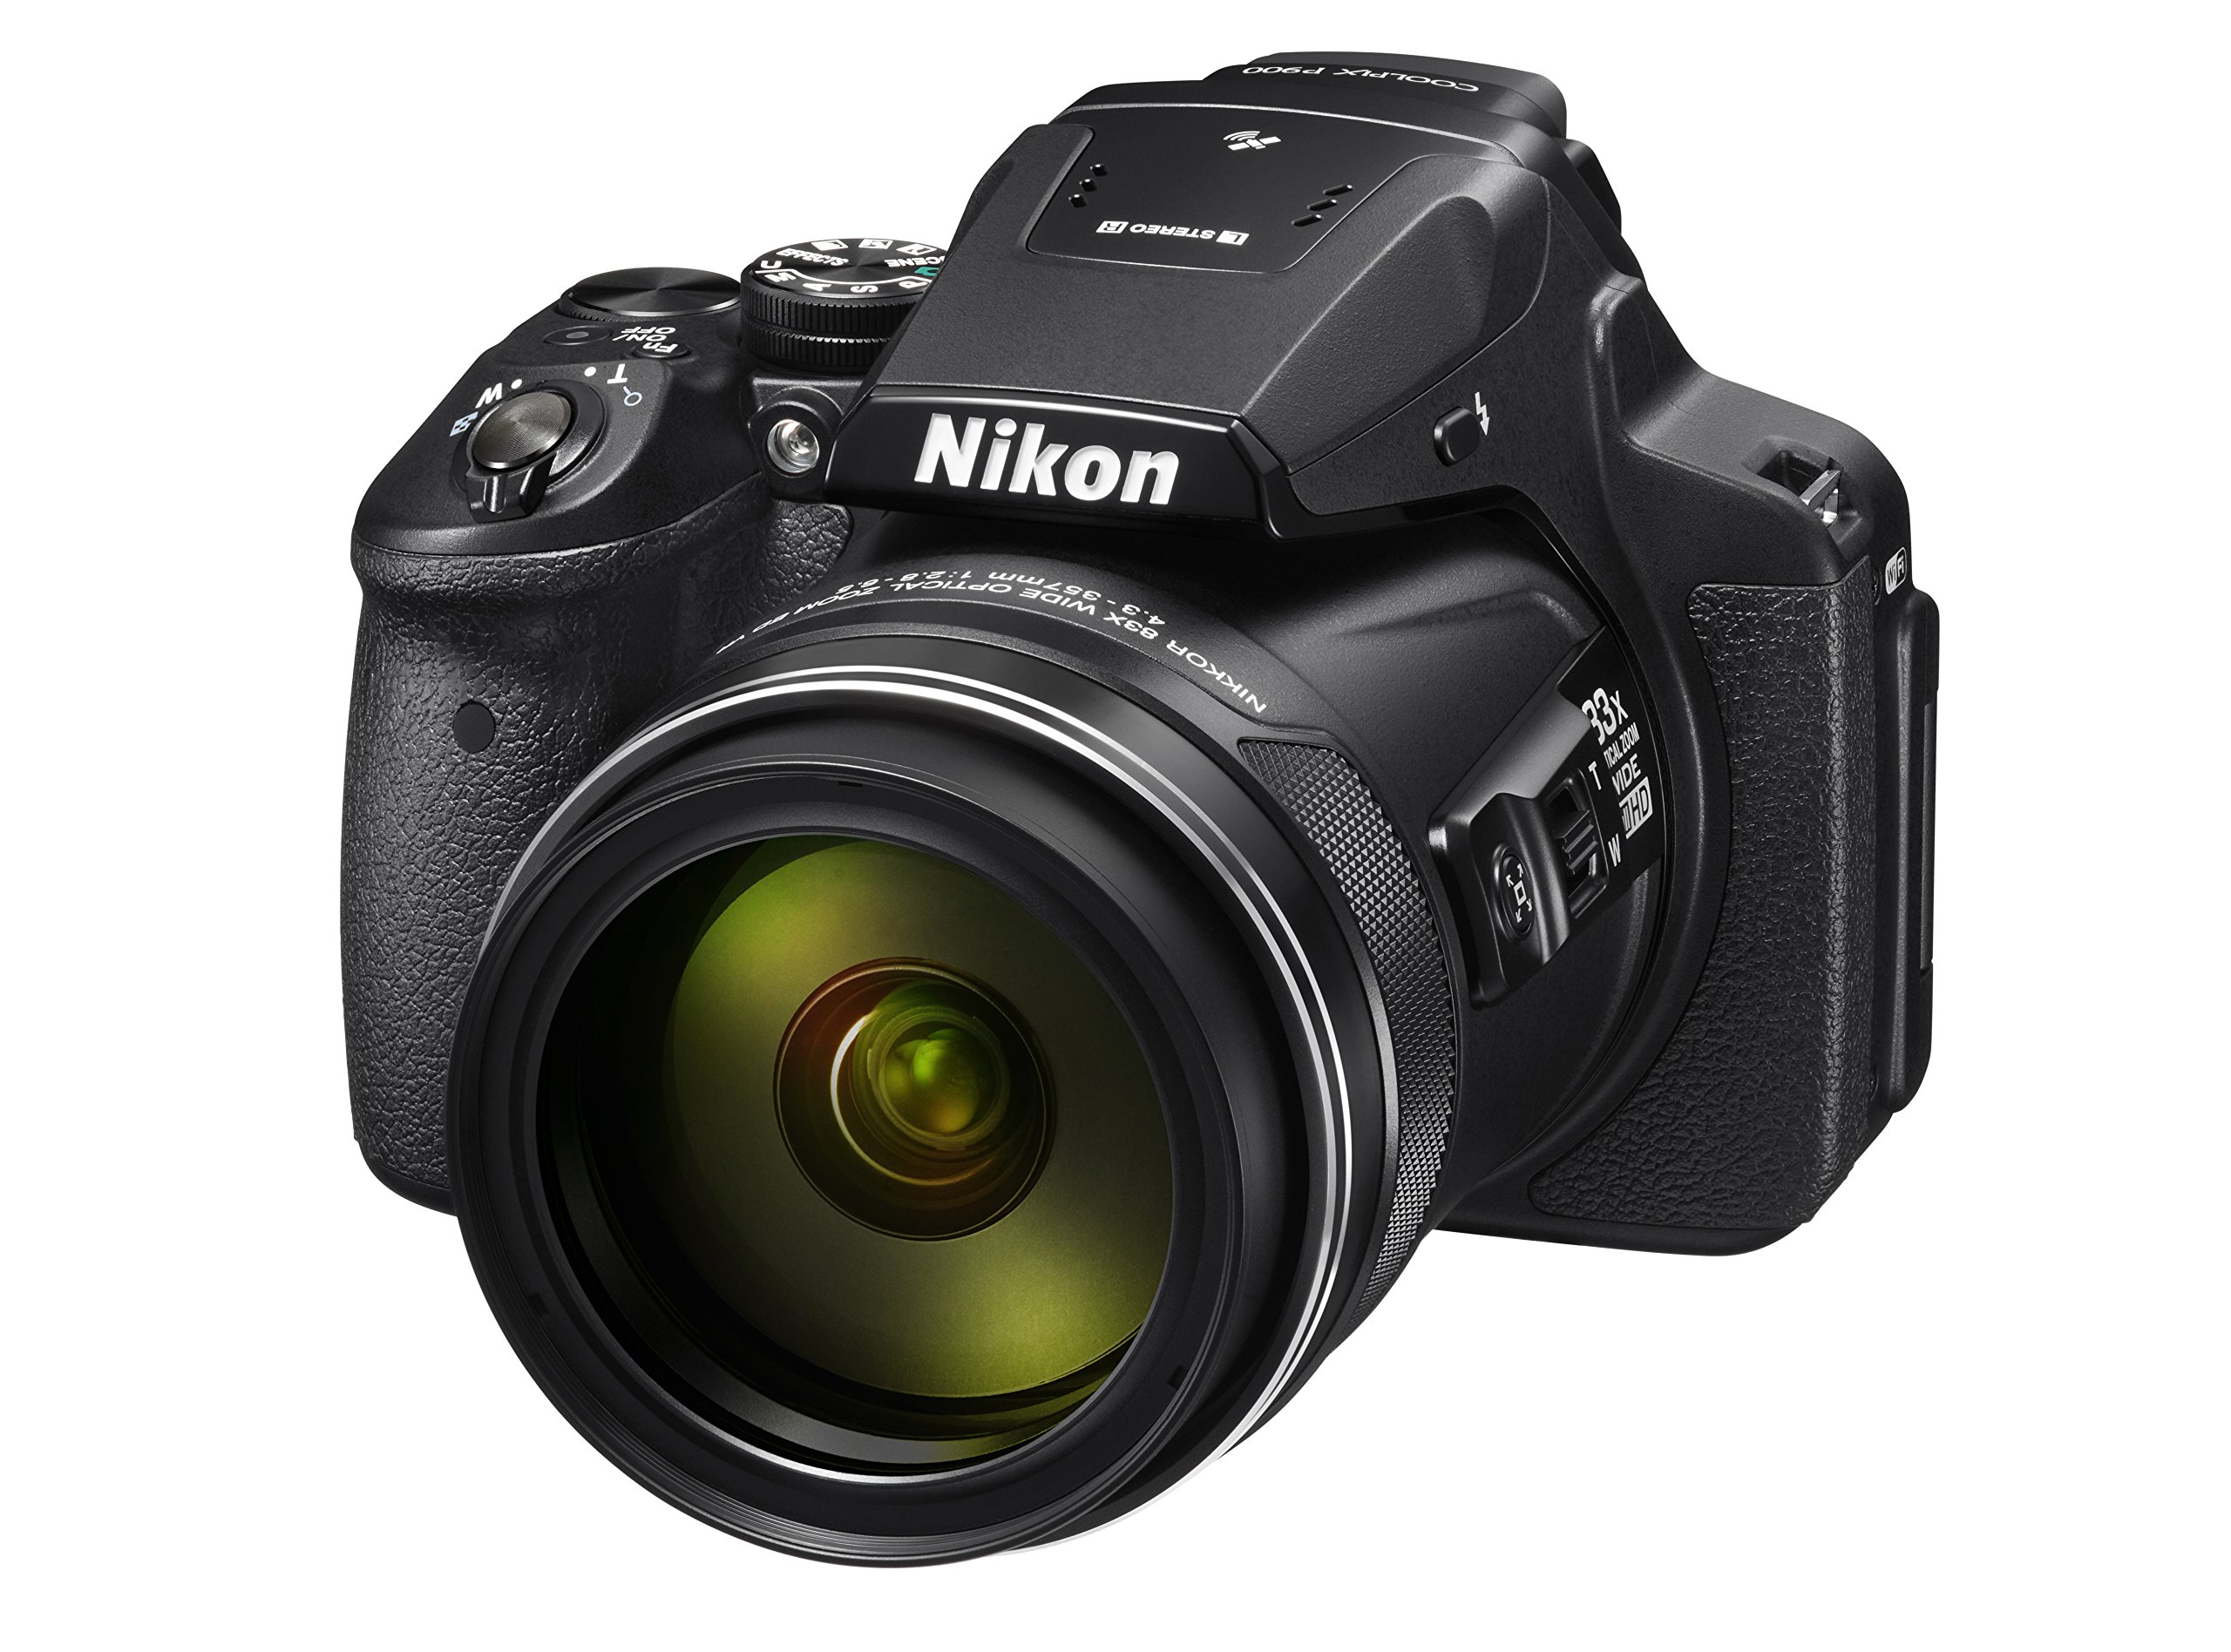 Nikon COOLPIX P900 Digital Camera (Black)